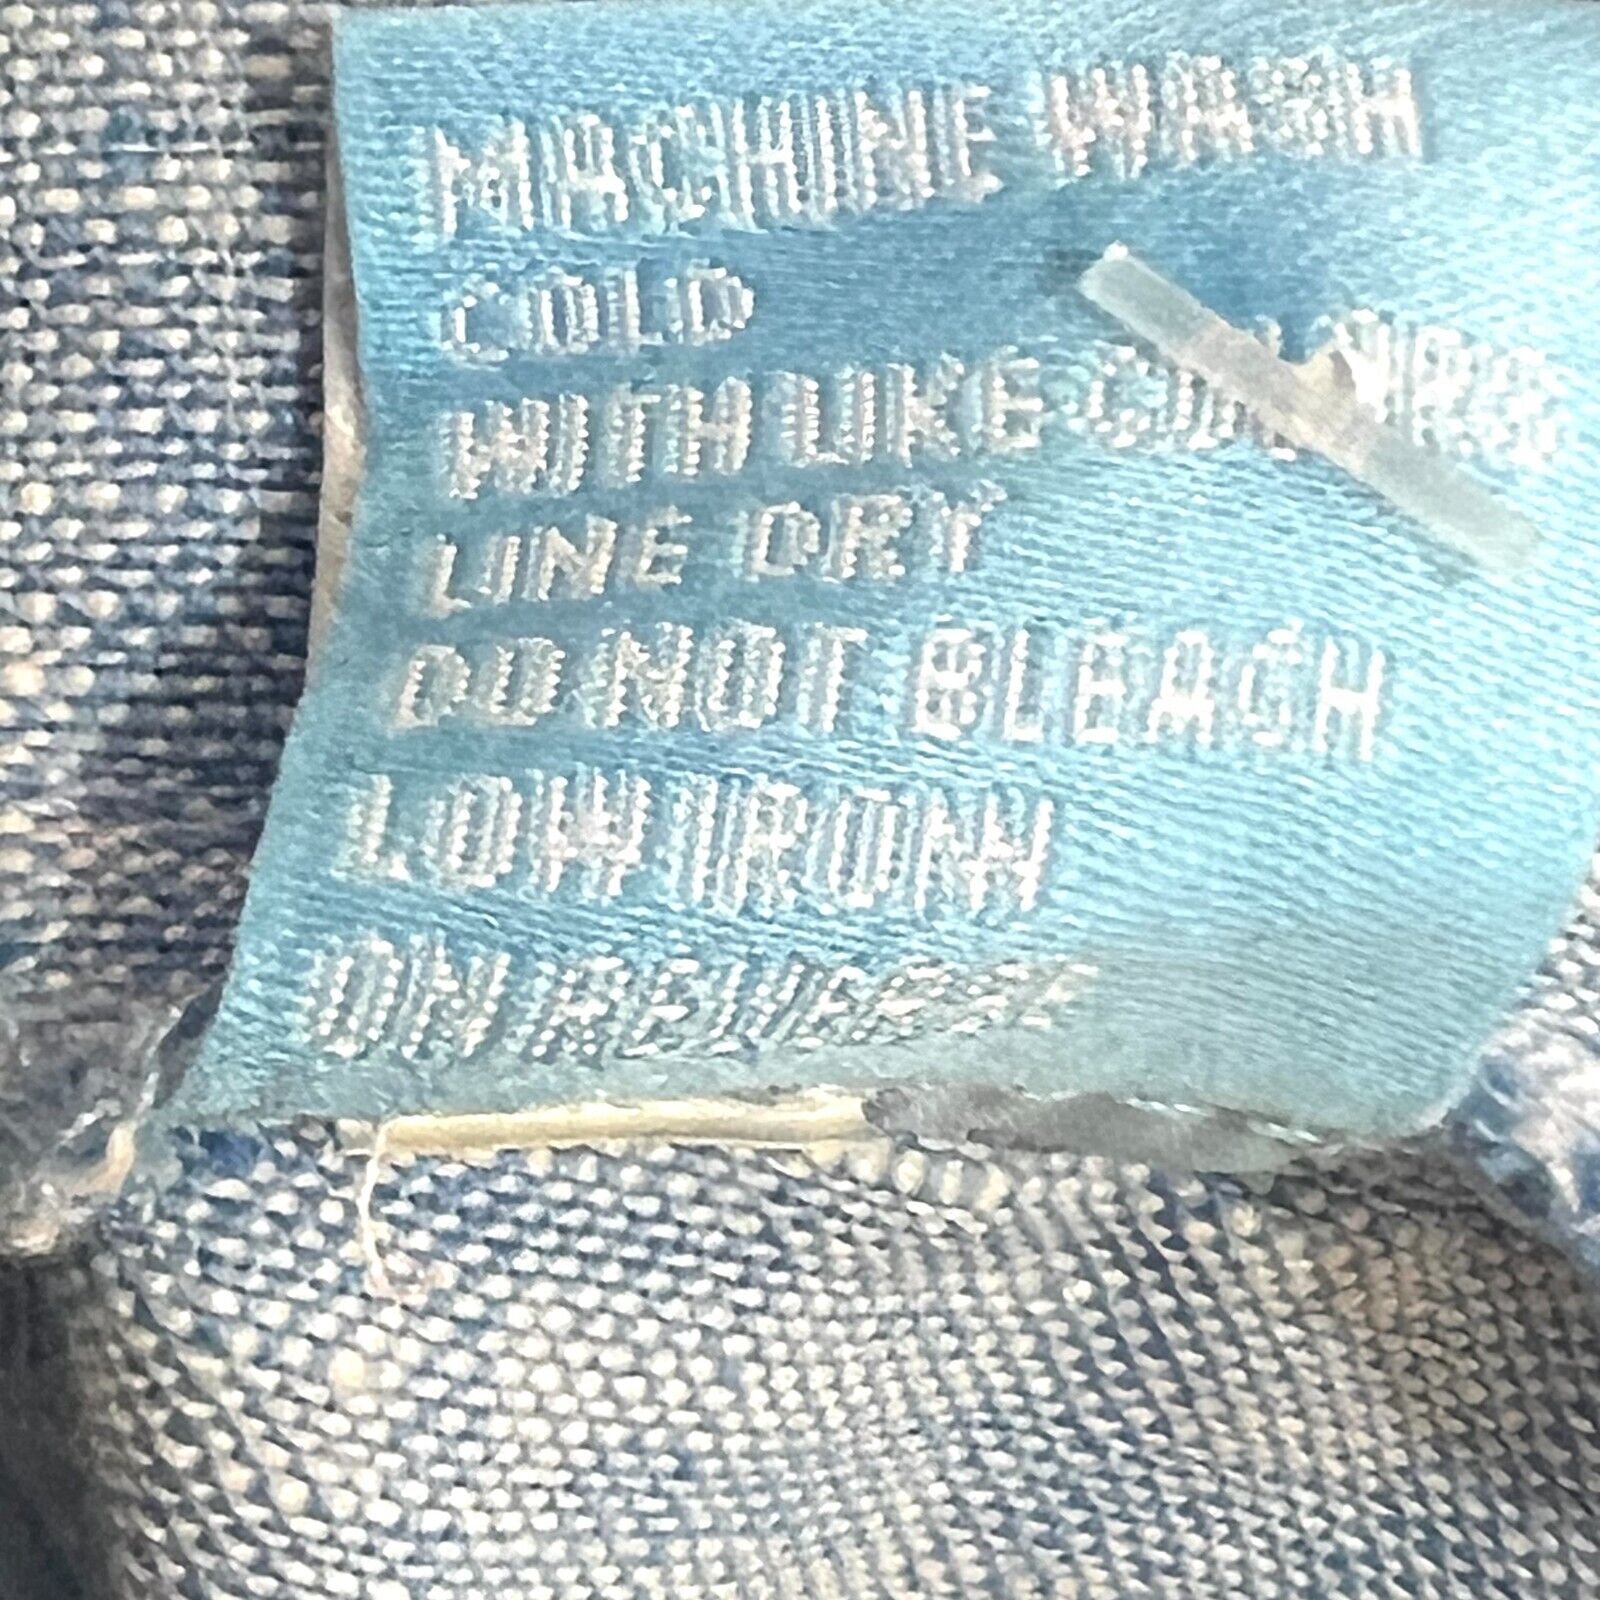 J. McLaughlin Light Blue Linen Button Front Vista Jacket Size Medium NEW $228